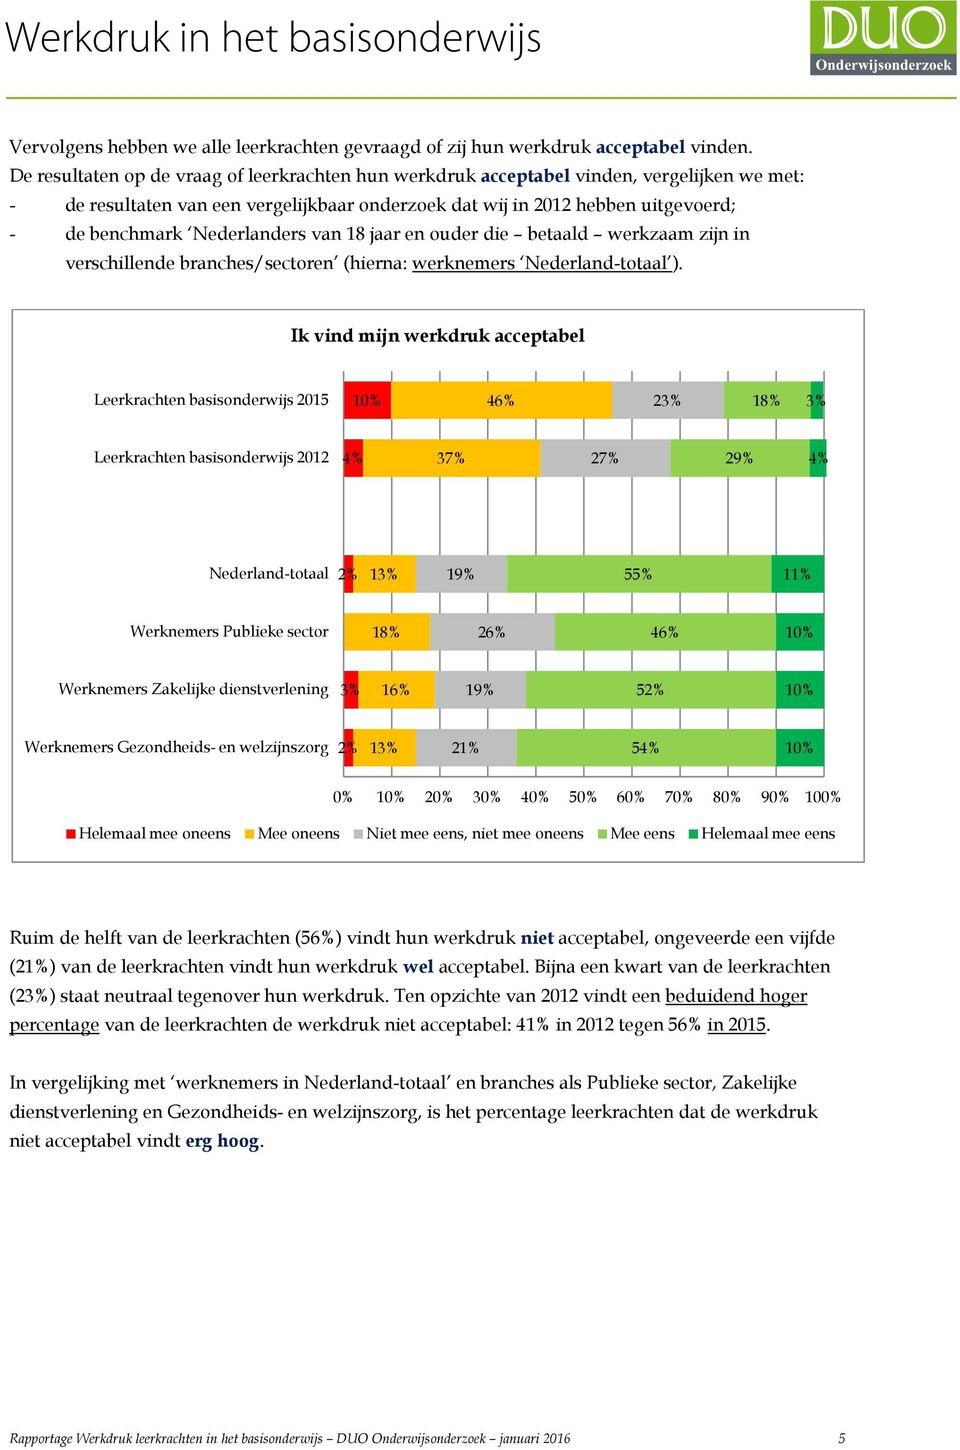 Nederlanders van 18 jaar en ouder die betaald werkzaam zijn in verschillende branches/sectoren (hierna: werknemers Nederland-totaal ).